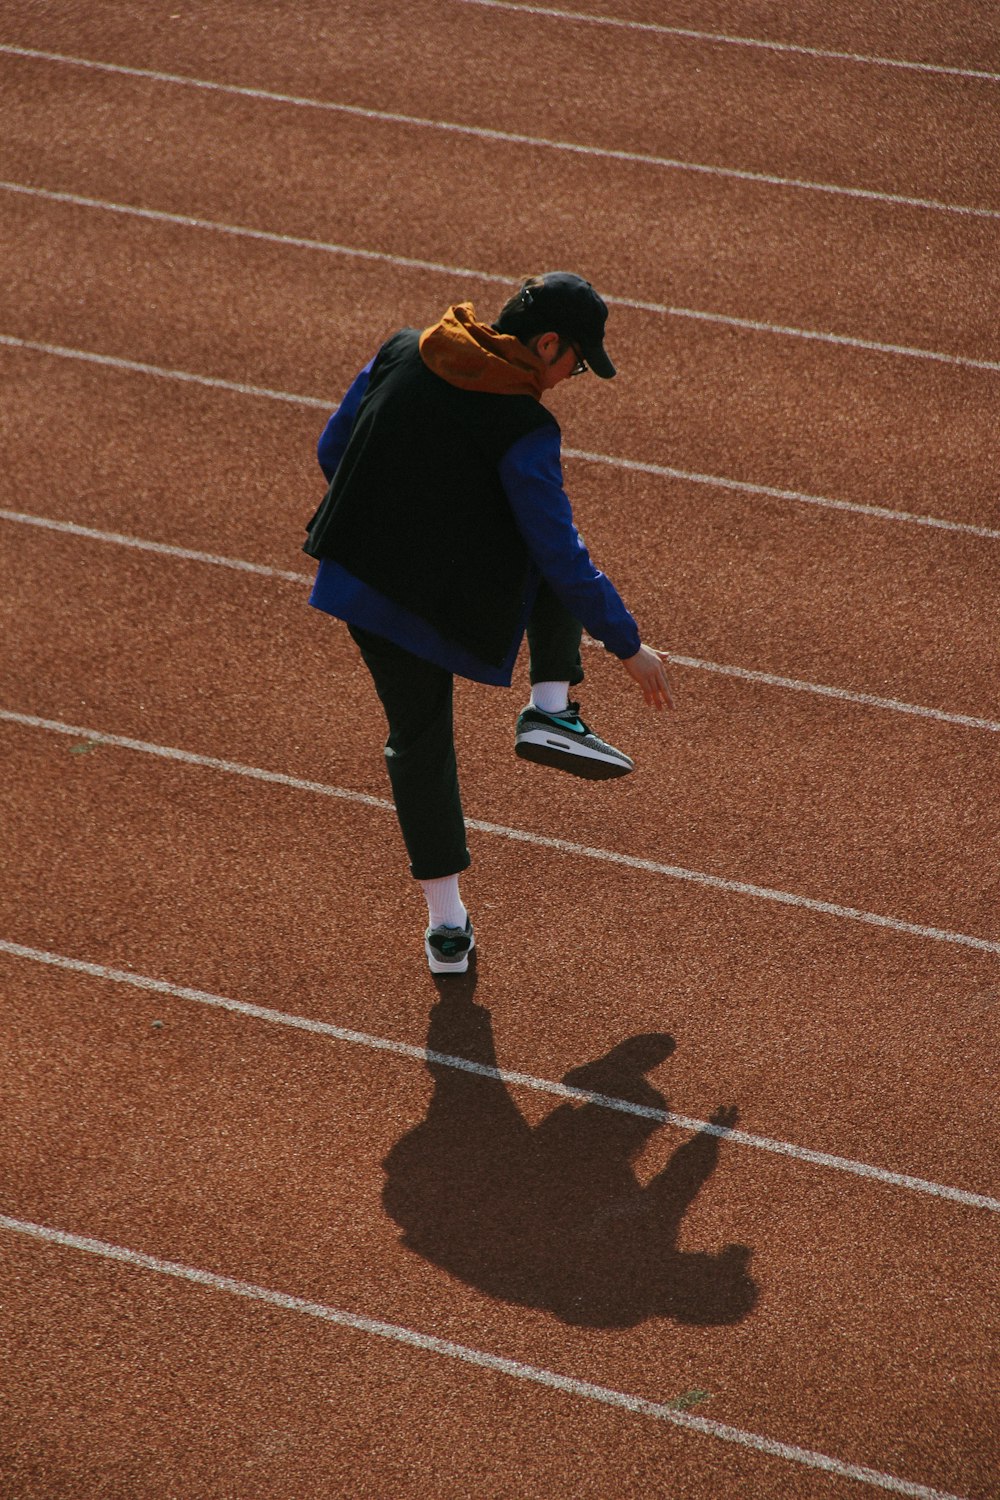 Mann zu Fuß auf dem Leichtathletikfeld